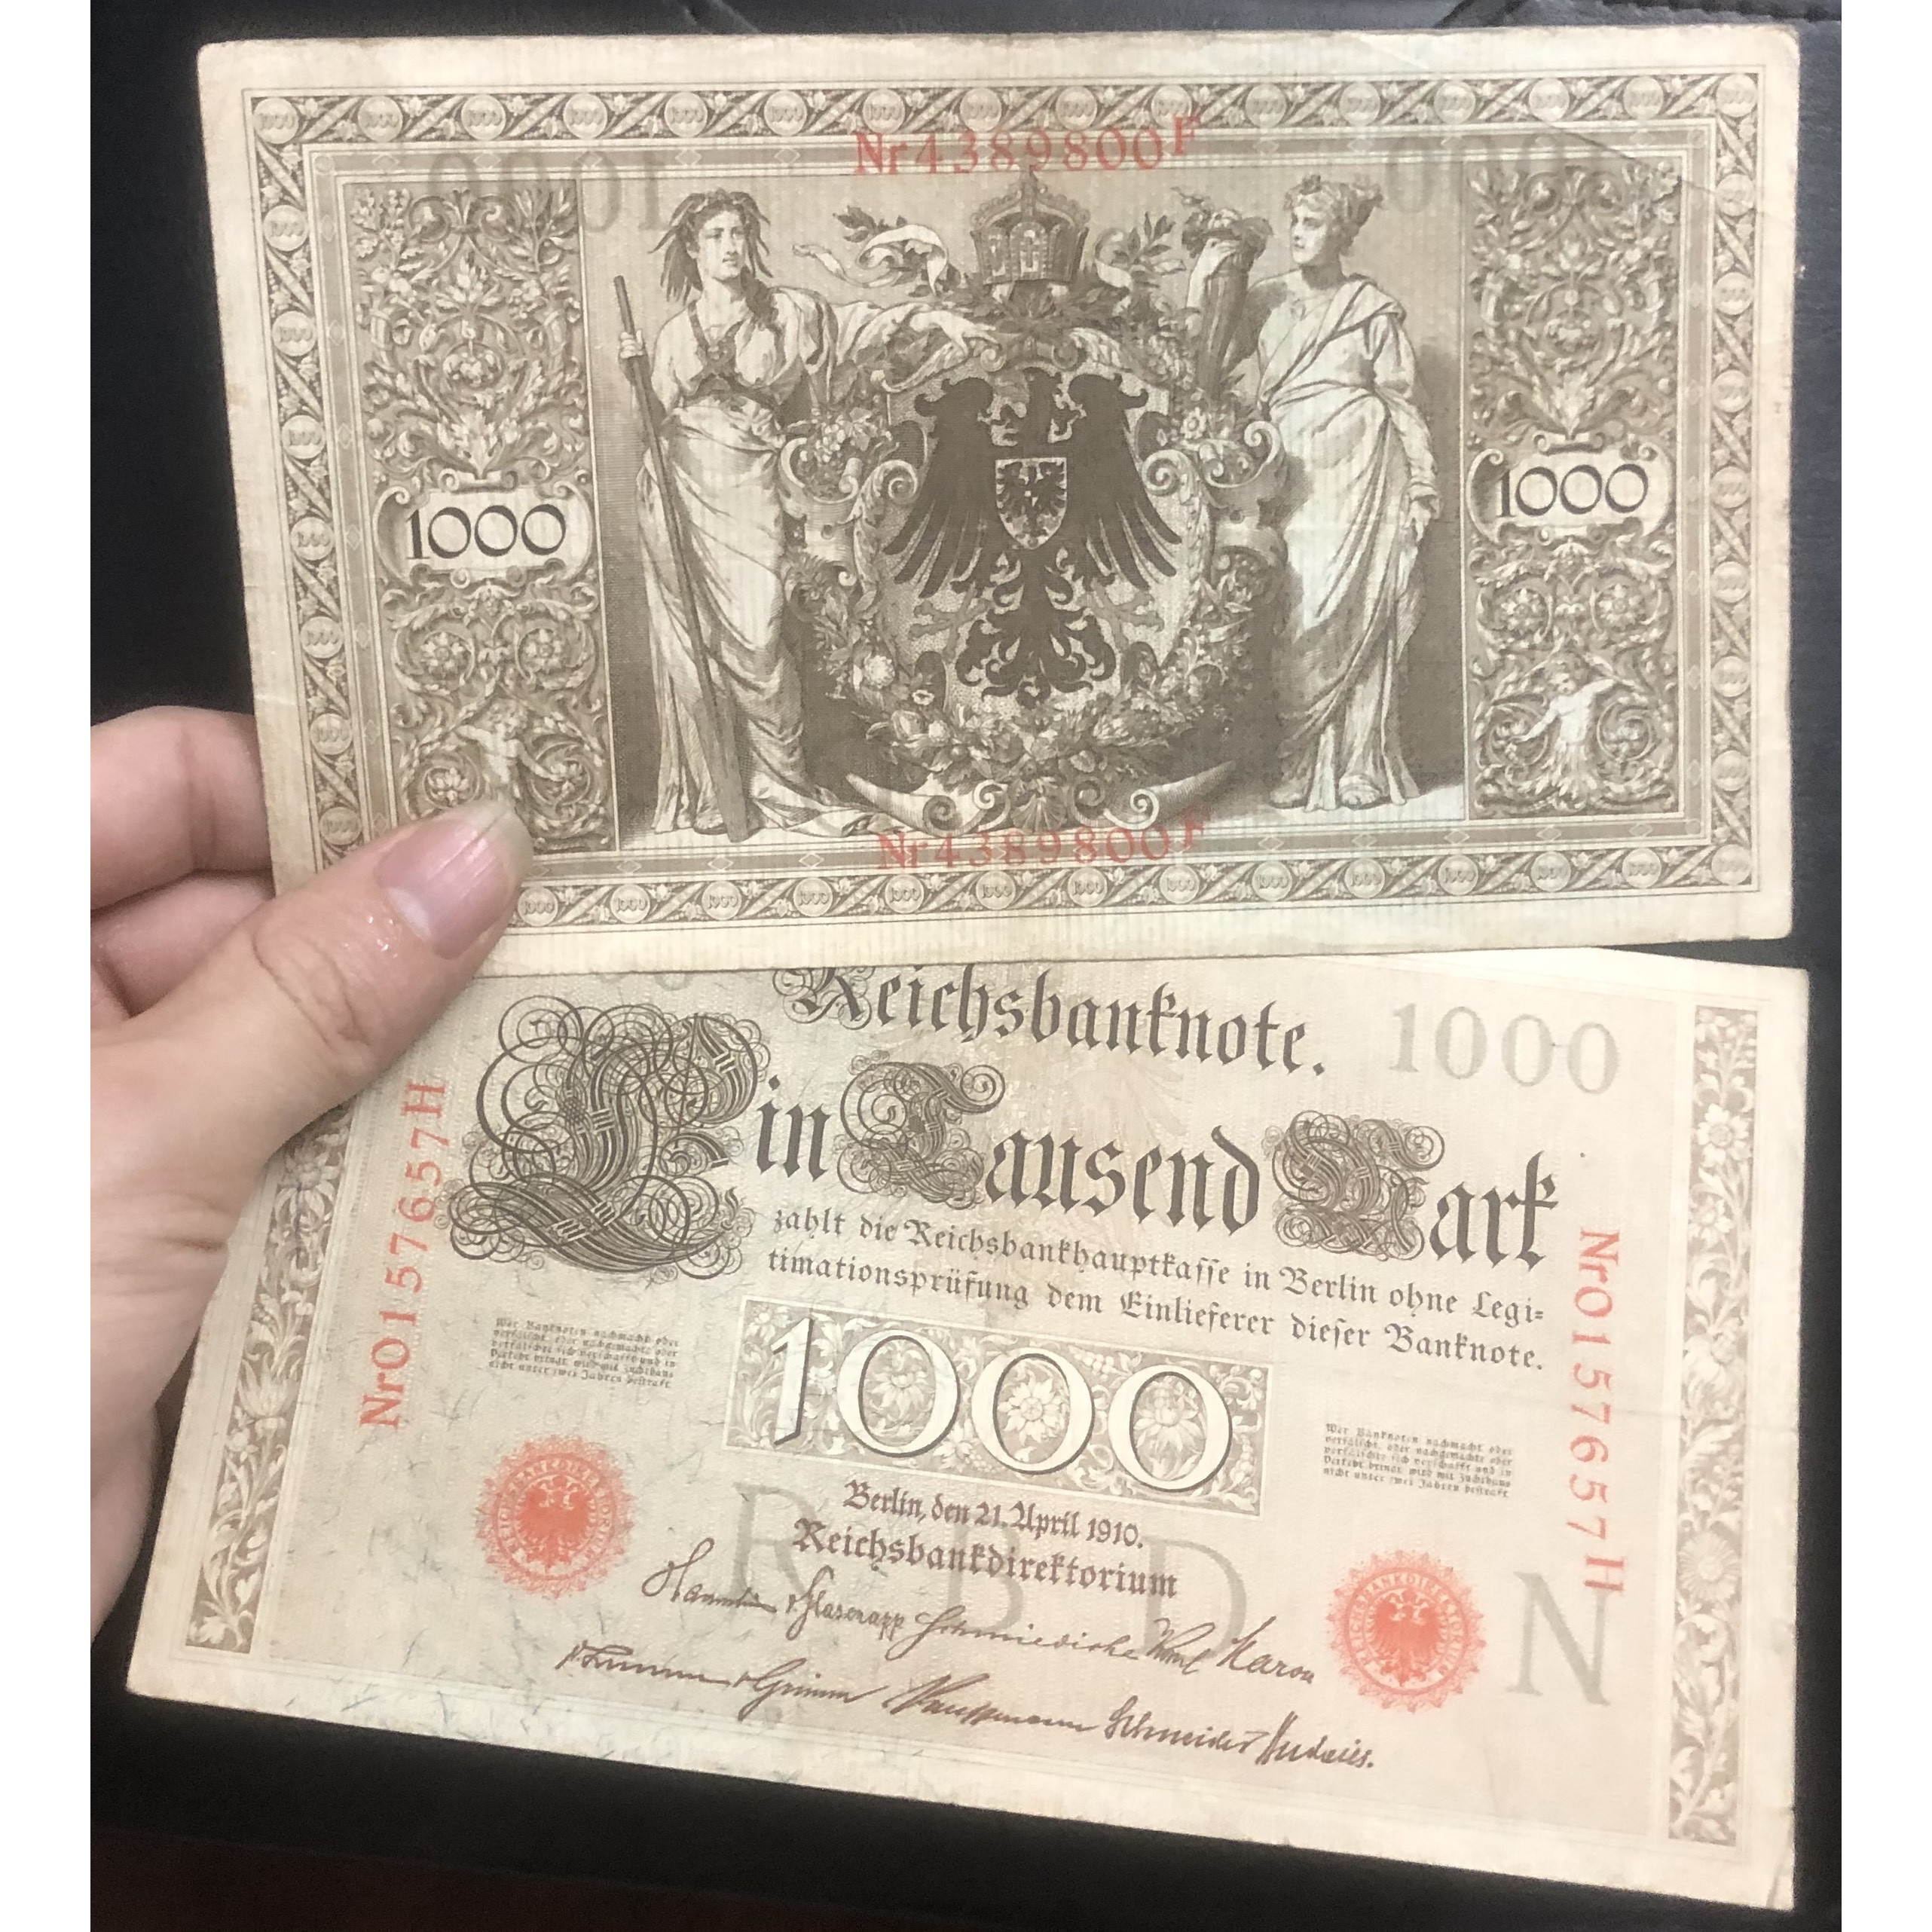 Tiền thế giới 1000 Mark Đức 1910, hơn 100 năm tuổi, khổ lớn sưu tầm, có phơi bảo quản sang trọng đi kèm